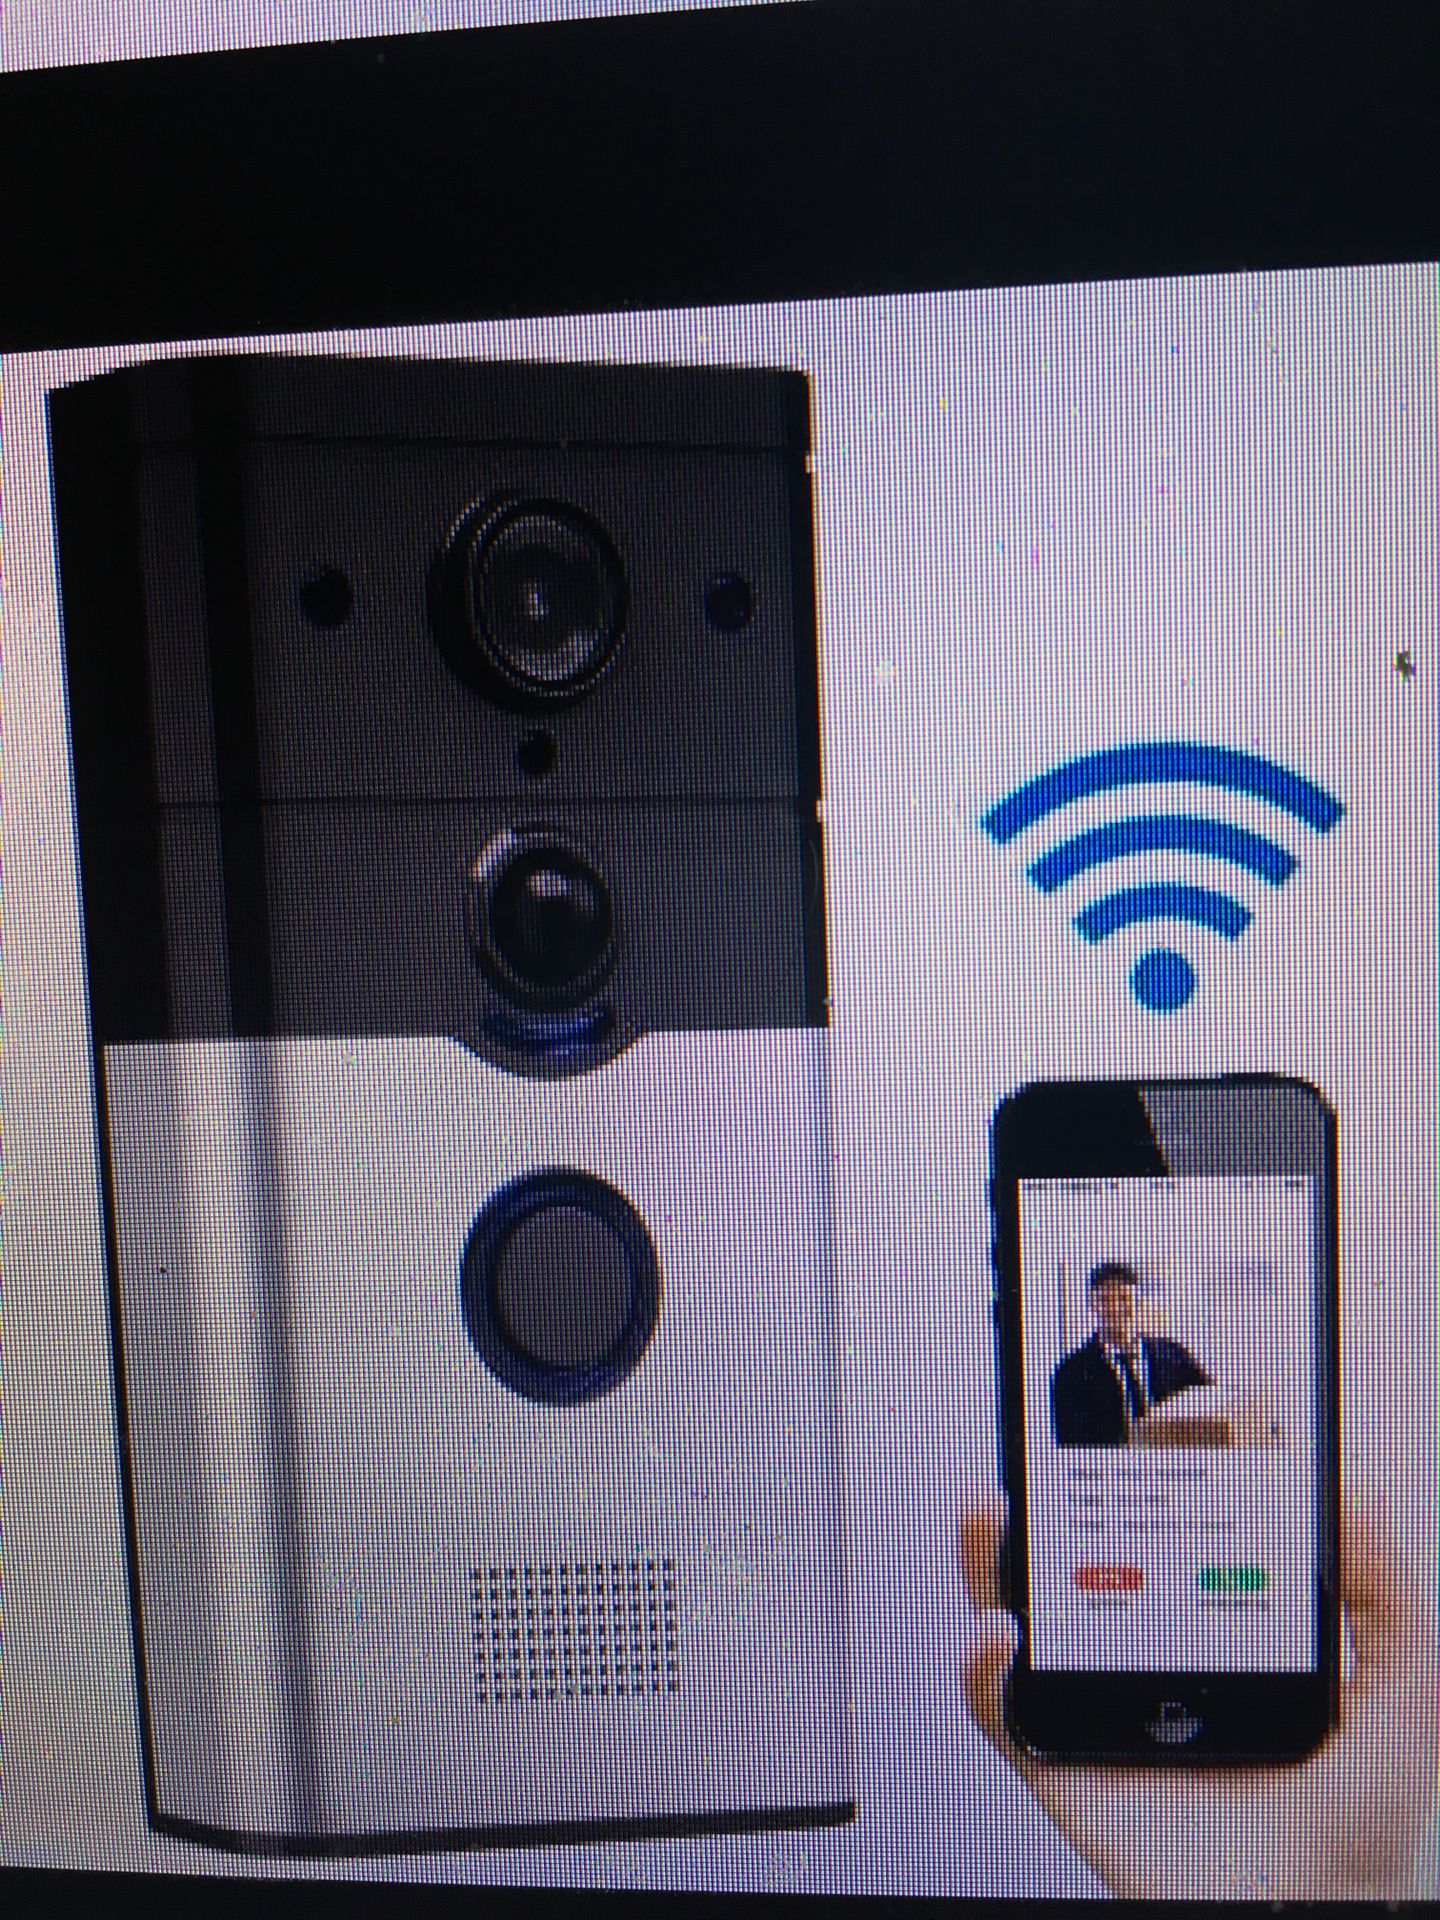 Doorbell camera security